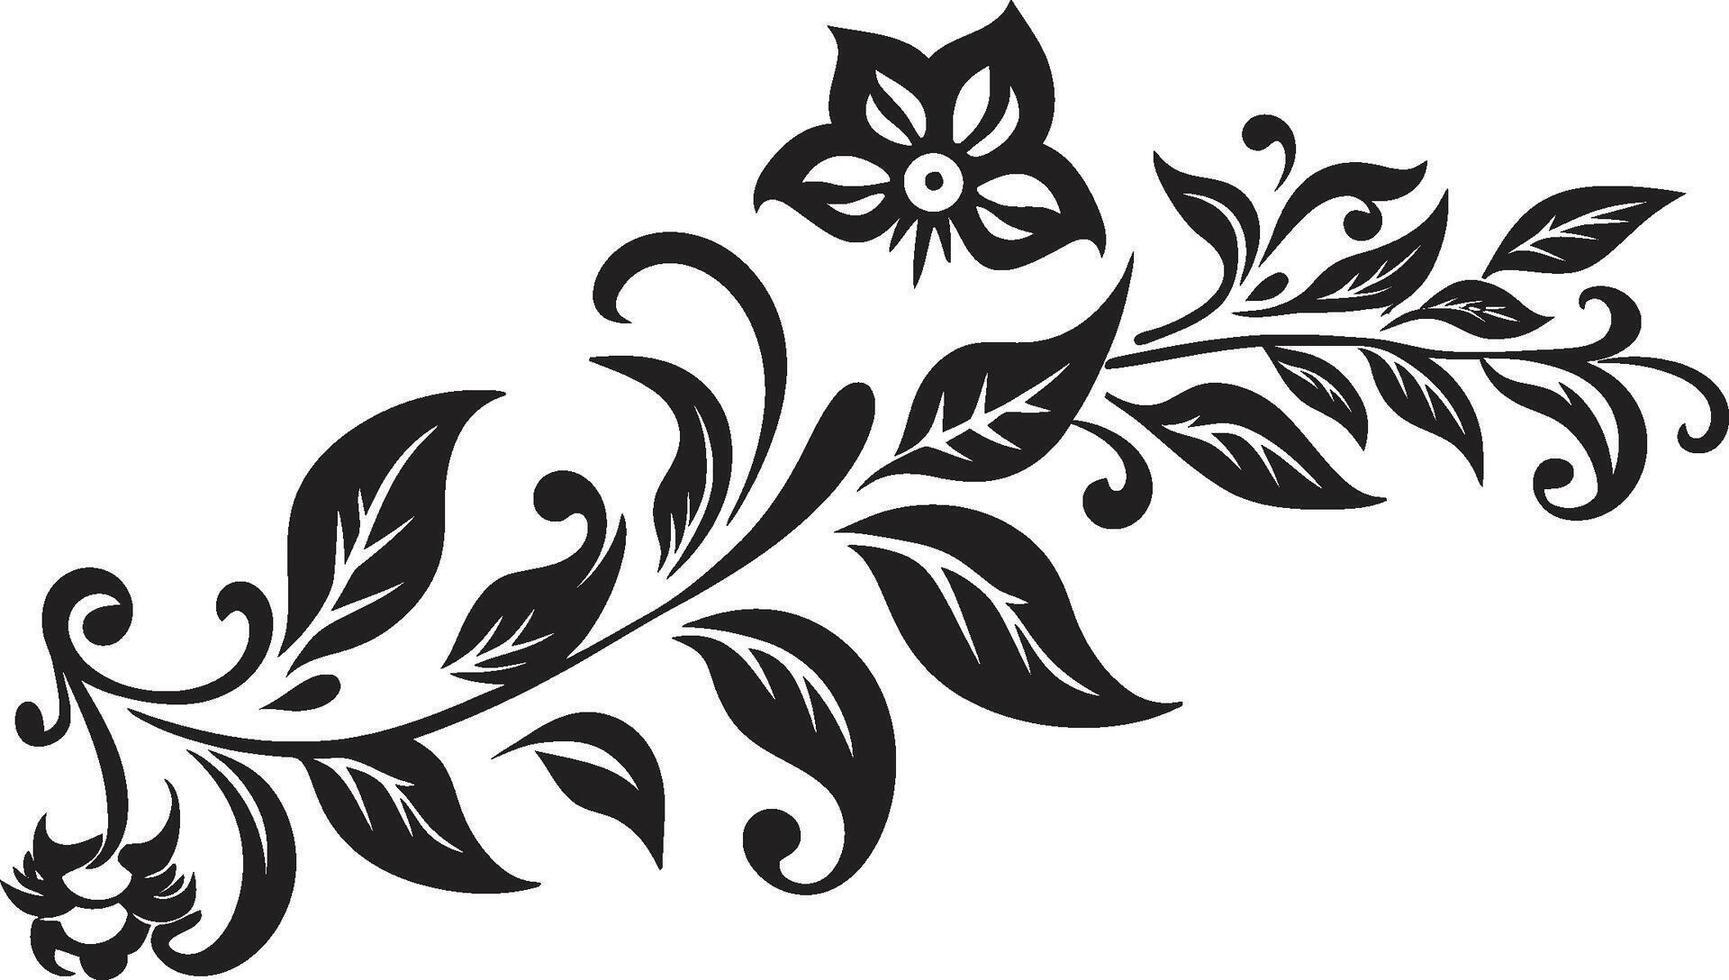 eleganza abbellito nero logo design con elegante scarabocchio decorazioni scolpito spirali elegante vettore icona con decorativo scarabocchio elementi